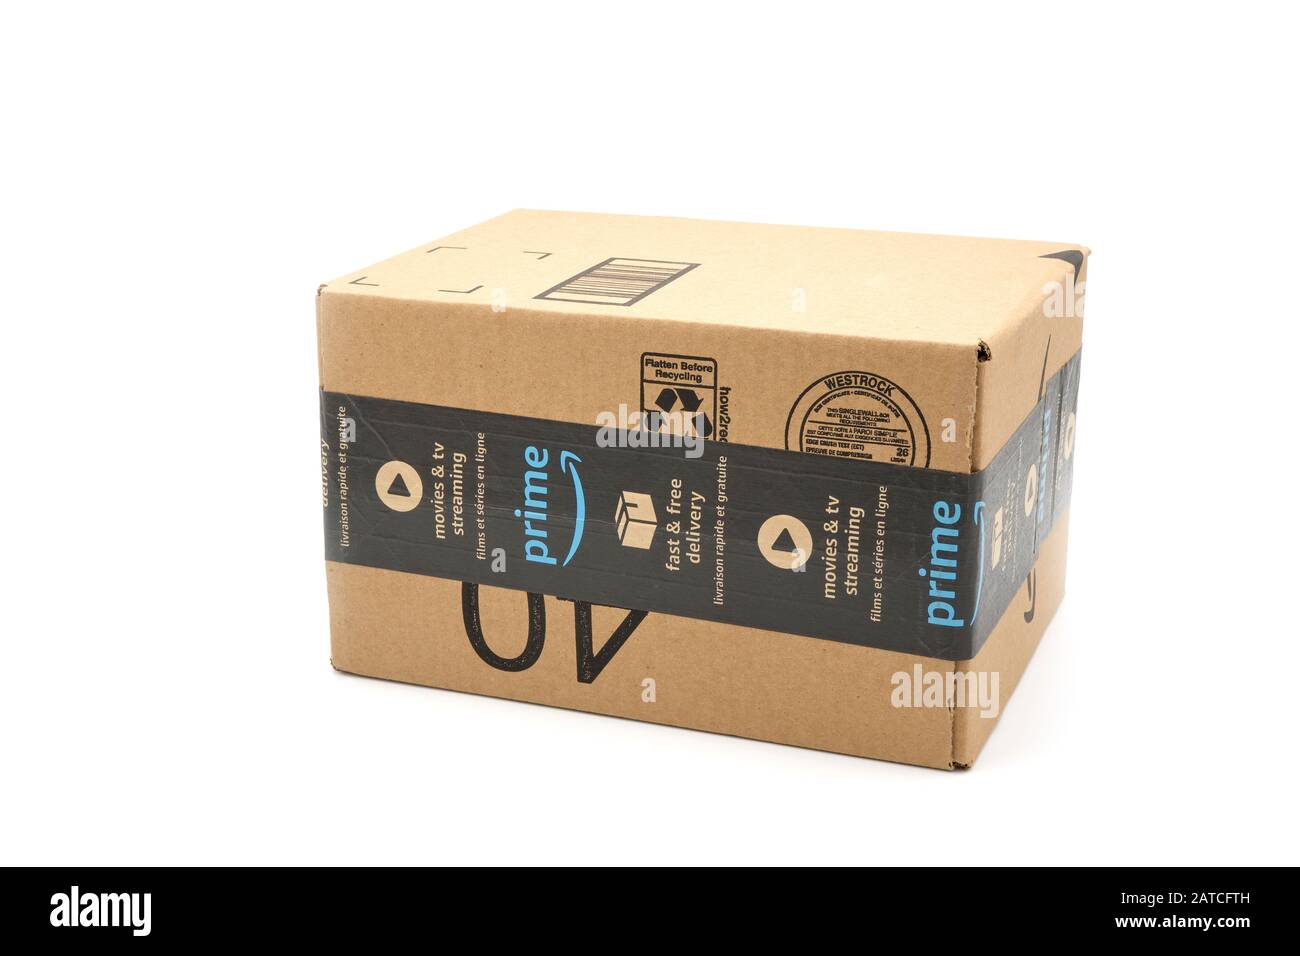 Amazon Prime Box Stockfotos und -bilder Kaufen - Alamy